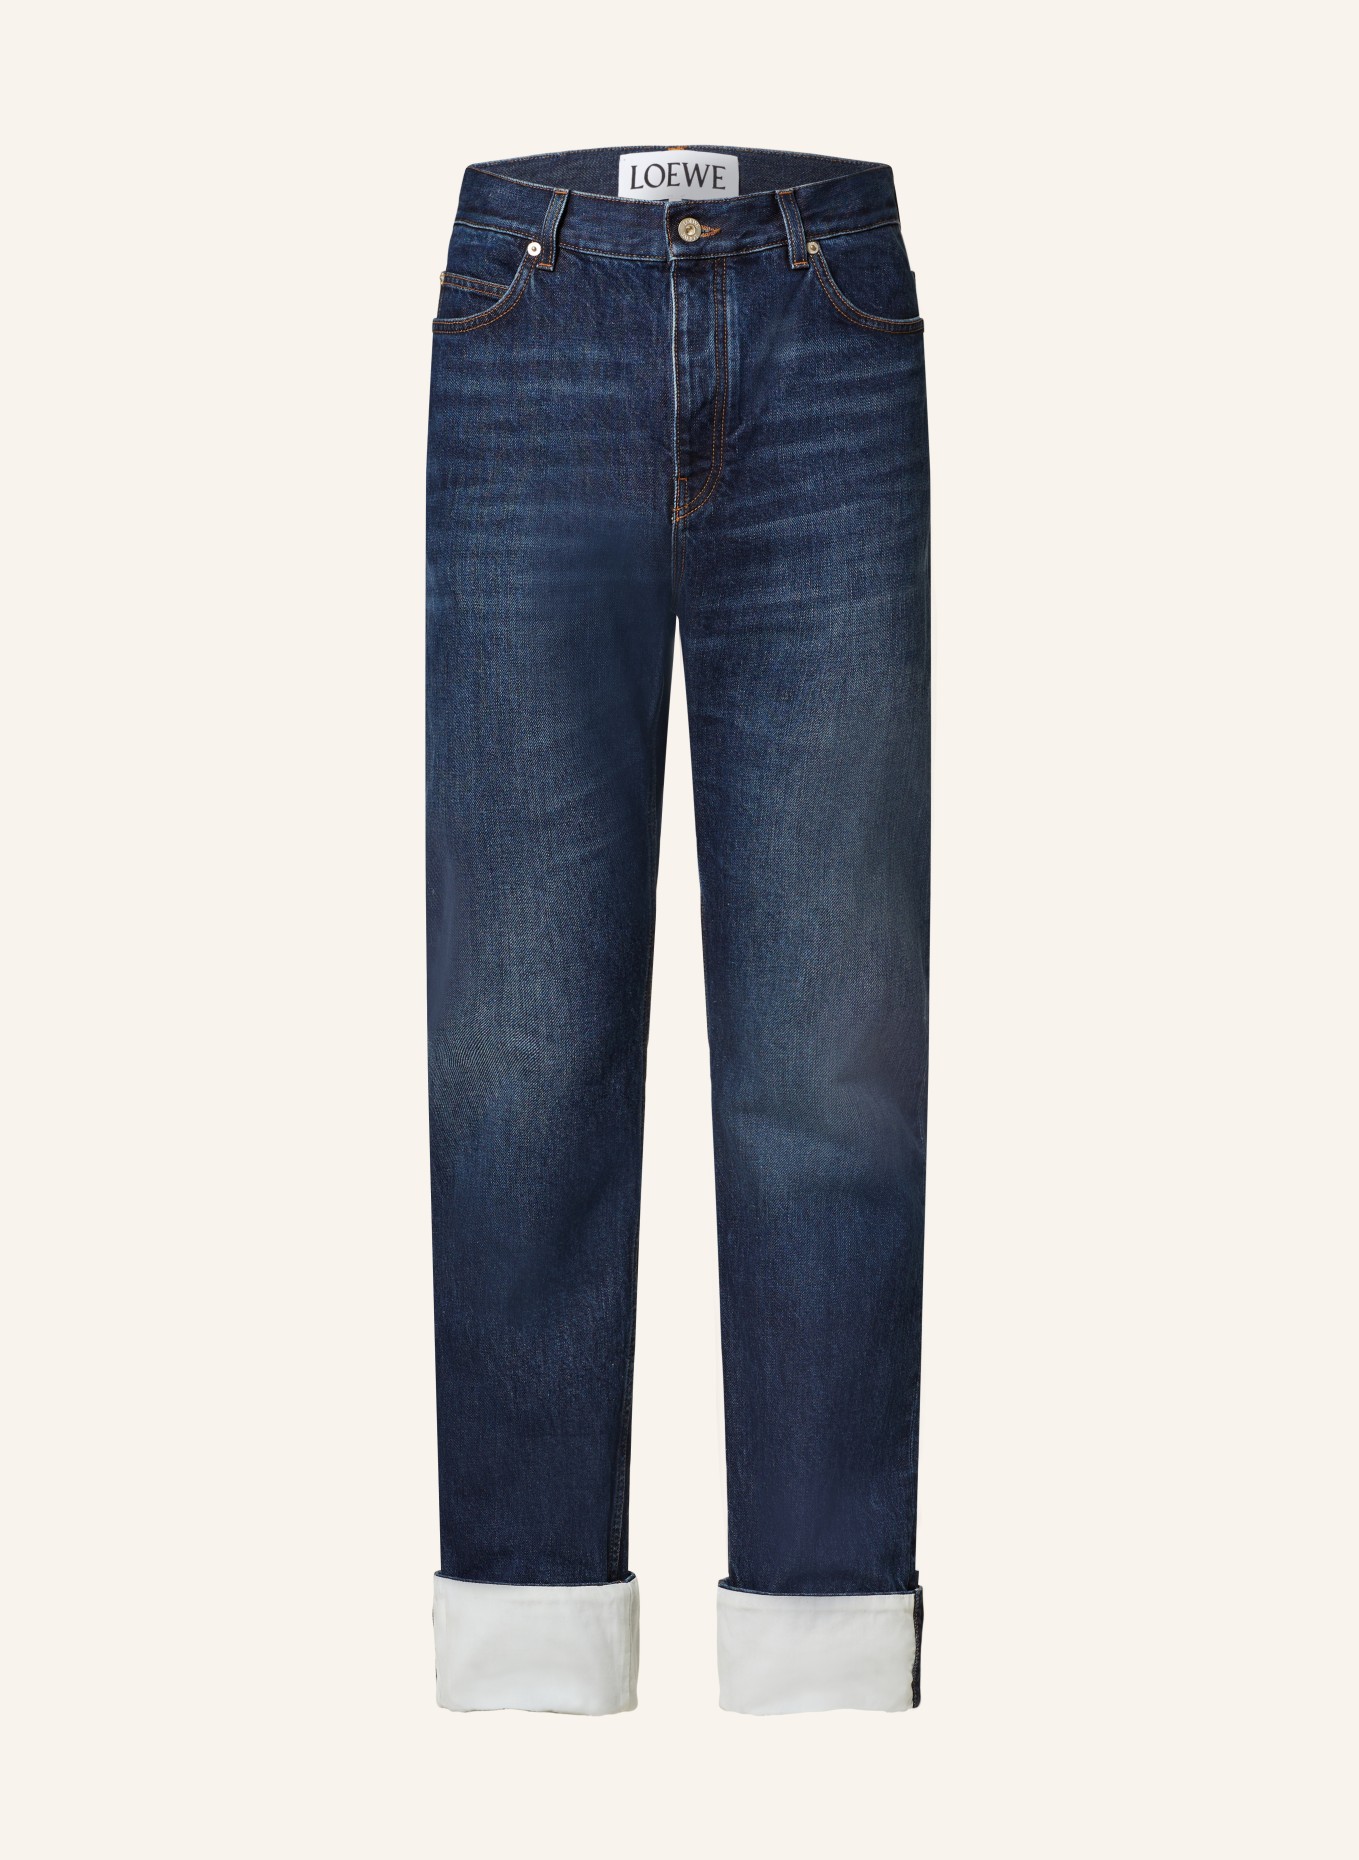 LOEWE Jeans FISHERMAN TURN UP Regular Fit, Farbe: 8383 WASHED INDIGO (Bild 1)